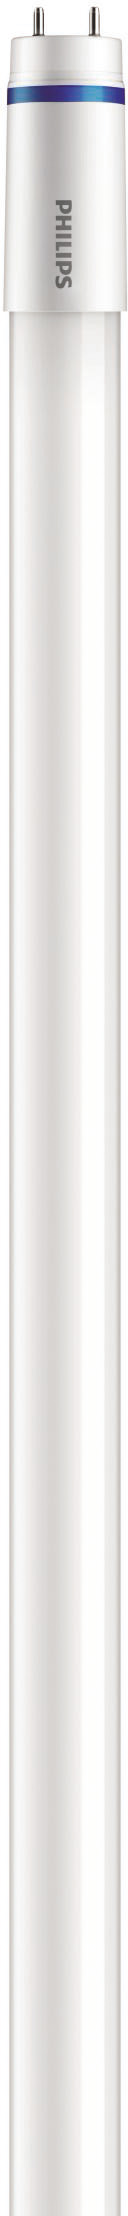 Philips Lighting LED-Tube T8 KVG/VVG G13, 865, 1200mm MASLEDtube #31660700 günstig online kaufen